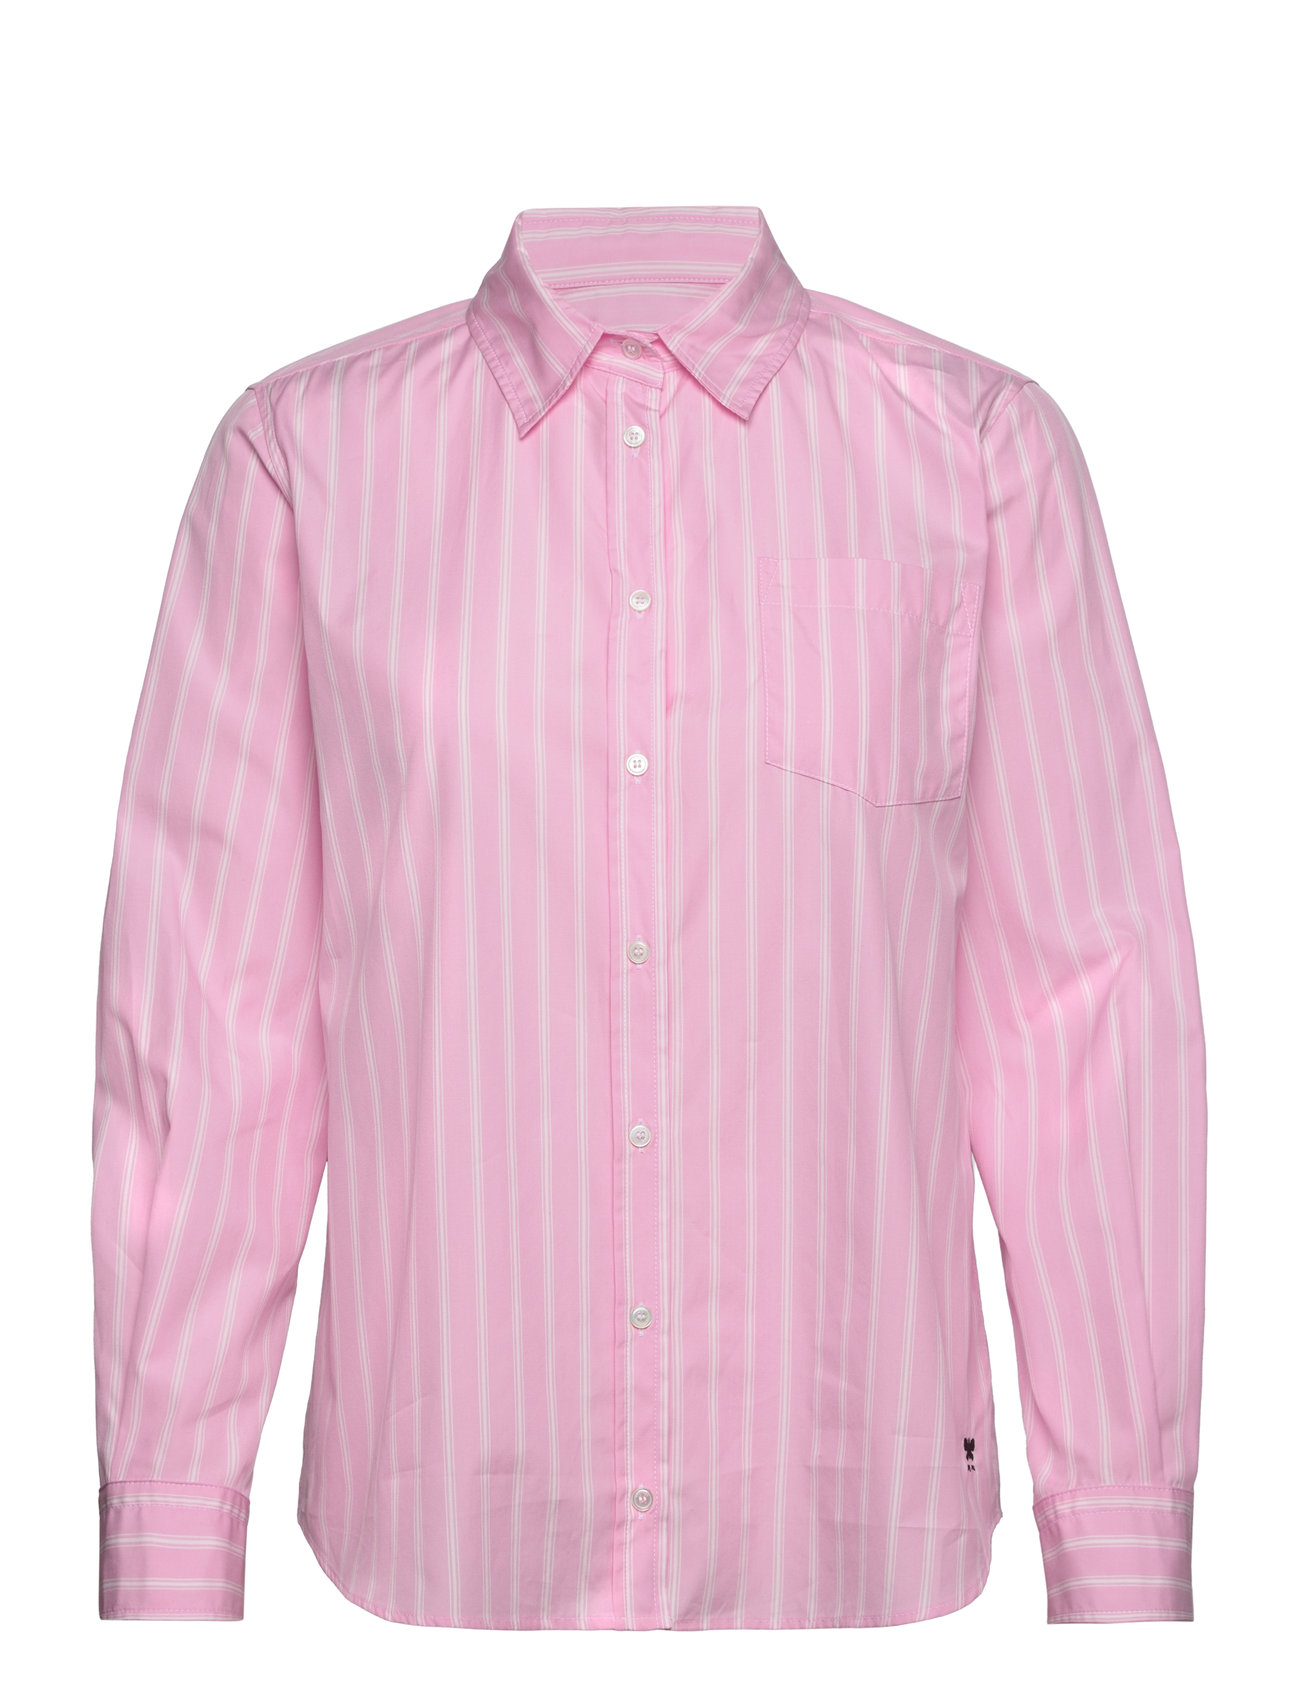 Bahamas Designers Shirts Long-sleeved Pink Weekend Max Mara